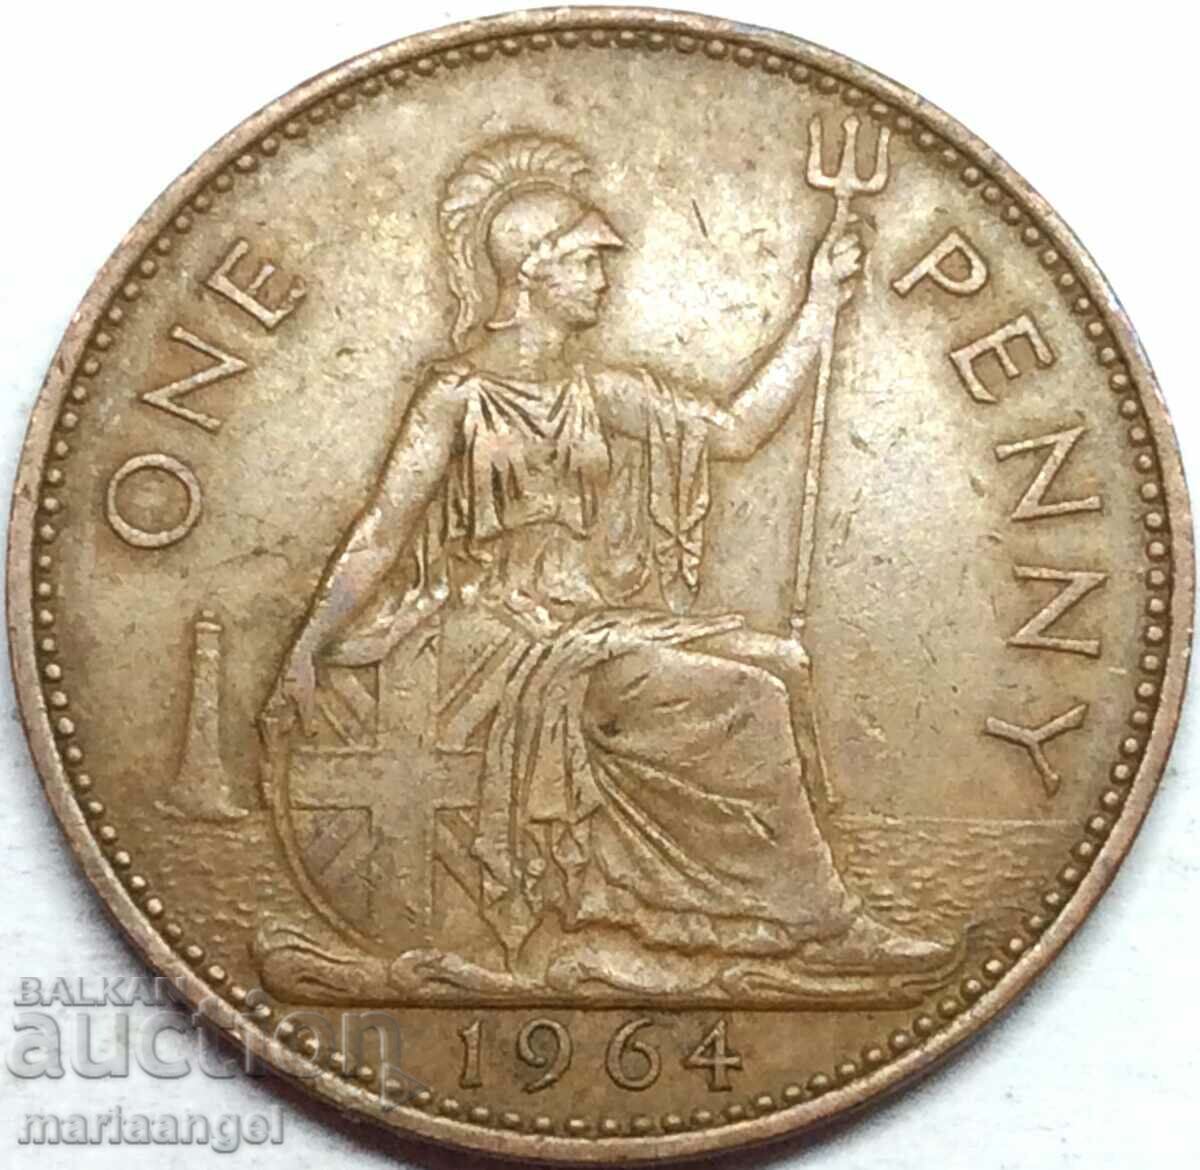 Великобритания 1 пени 1964 30мм бронз